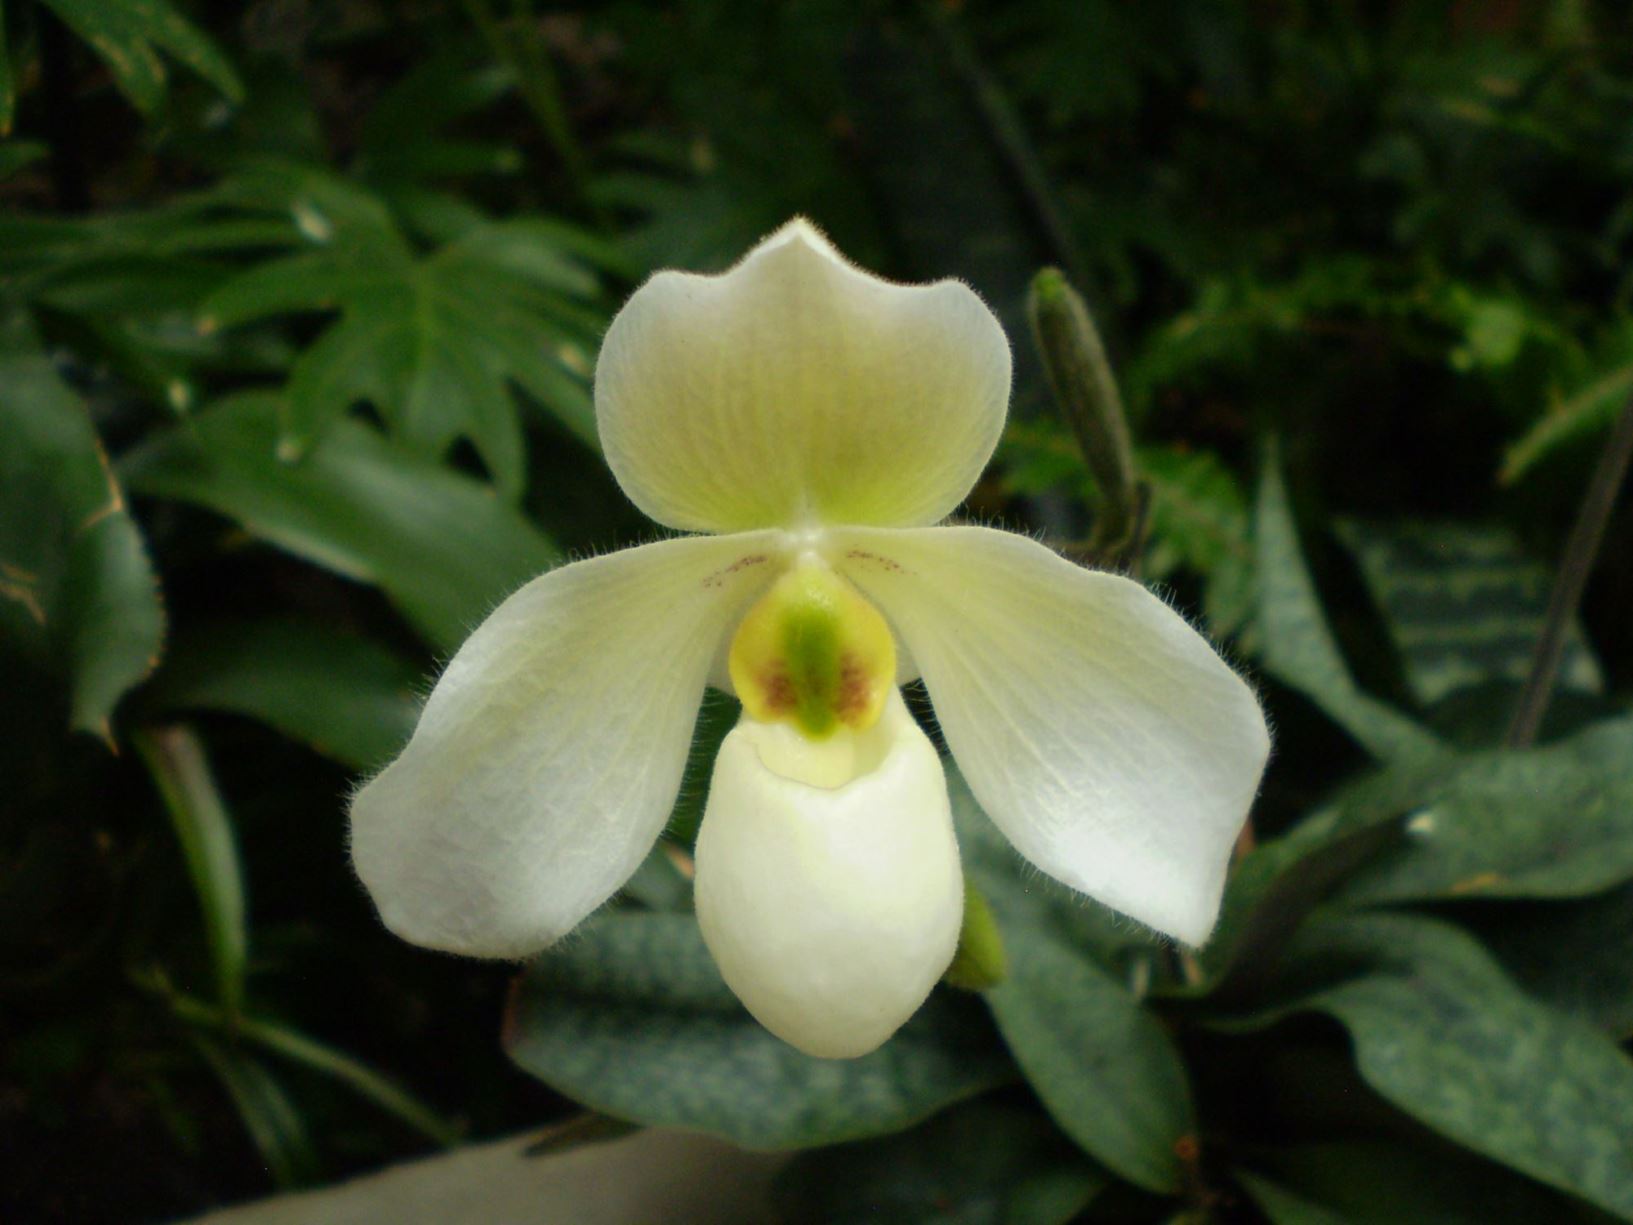 Paphiopedilum Deperle - slipper orchid